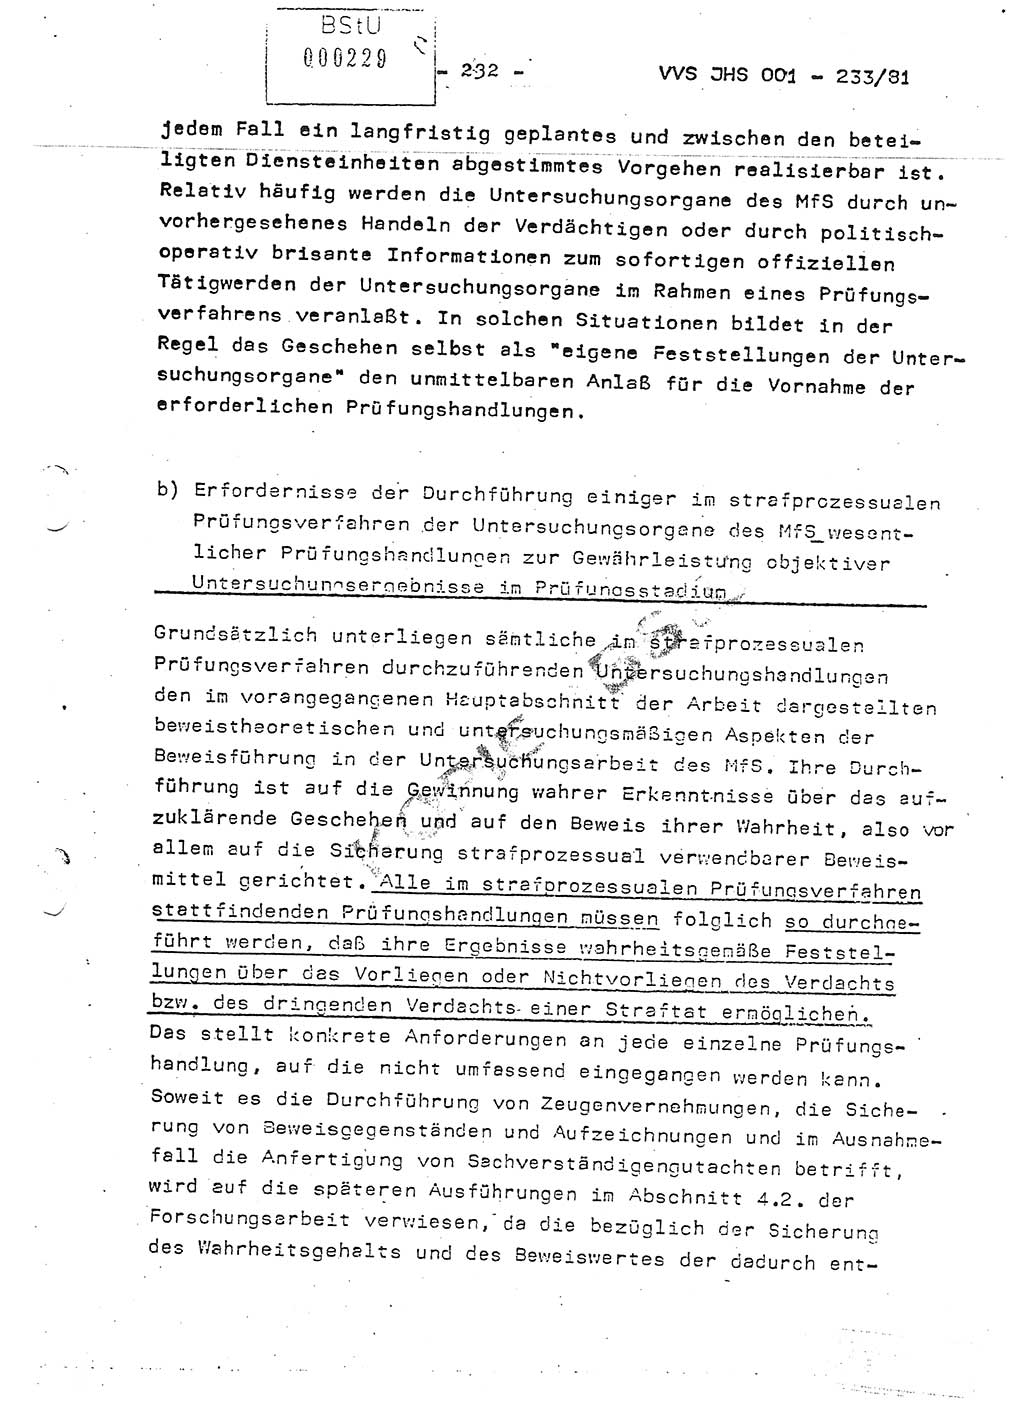 Dissertation Oberstleutnant Horst Zank (JHS), Oberstleutnant Dr. Karl-Heinz Knoblauch (JHS), Oberstleutnant Gustav-Adolf Kowalewski (HA Ⅸ), Oberstleutnant Wolfgang Plötner (HA Ⅸ), Ministerium für Staatssicherheit (MfS) [Deutsche Demokratische Republik (DDR)], Juristische Hochschule (JHS), Vertrauliche Verschlußsache (VVS) o001-233/81, Potsdam 1981, Blatt 232 (Diss. MfS DDR JHS VVS o001-233/81 1981, Bl. 232)